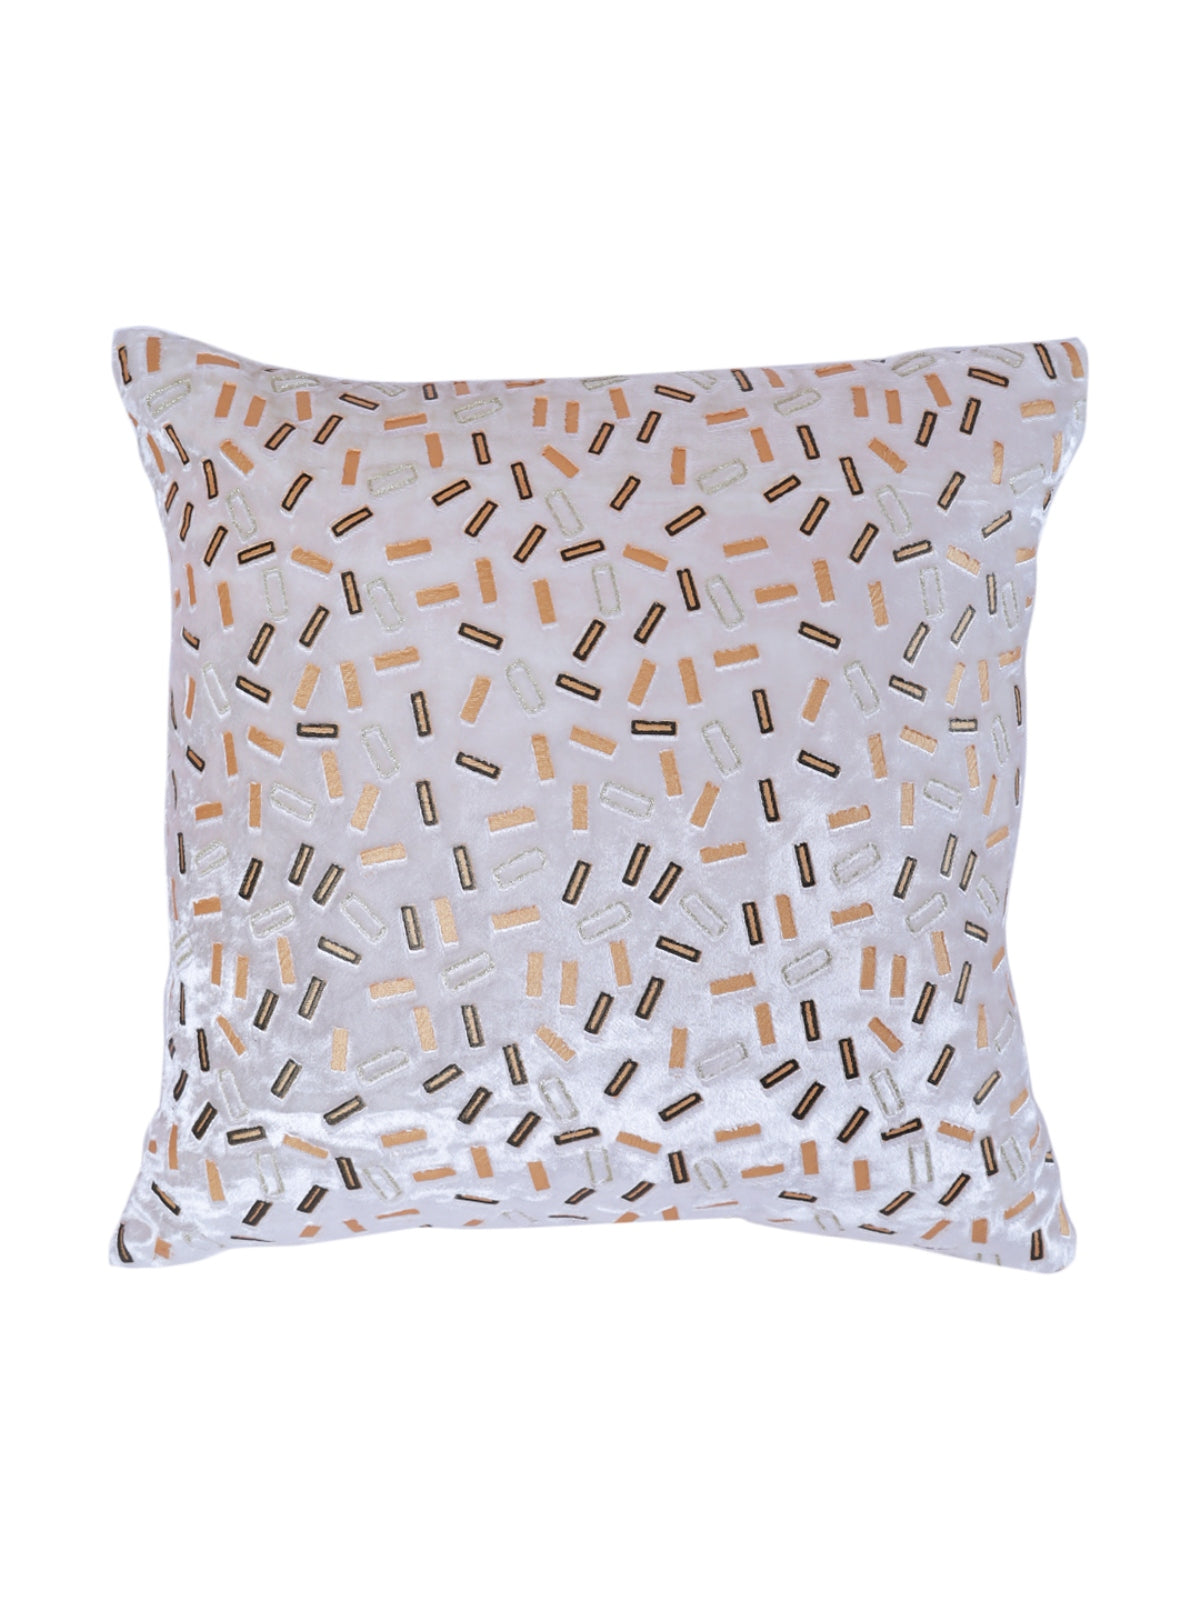 Velvet Geometric Designer Cushion Cover 16x16 Inche, Set of 5 - White